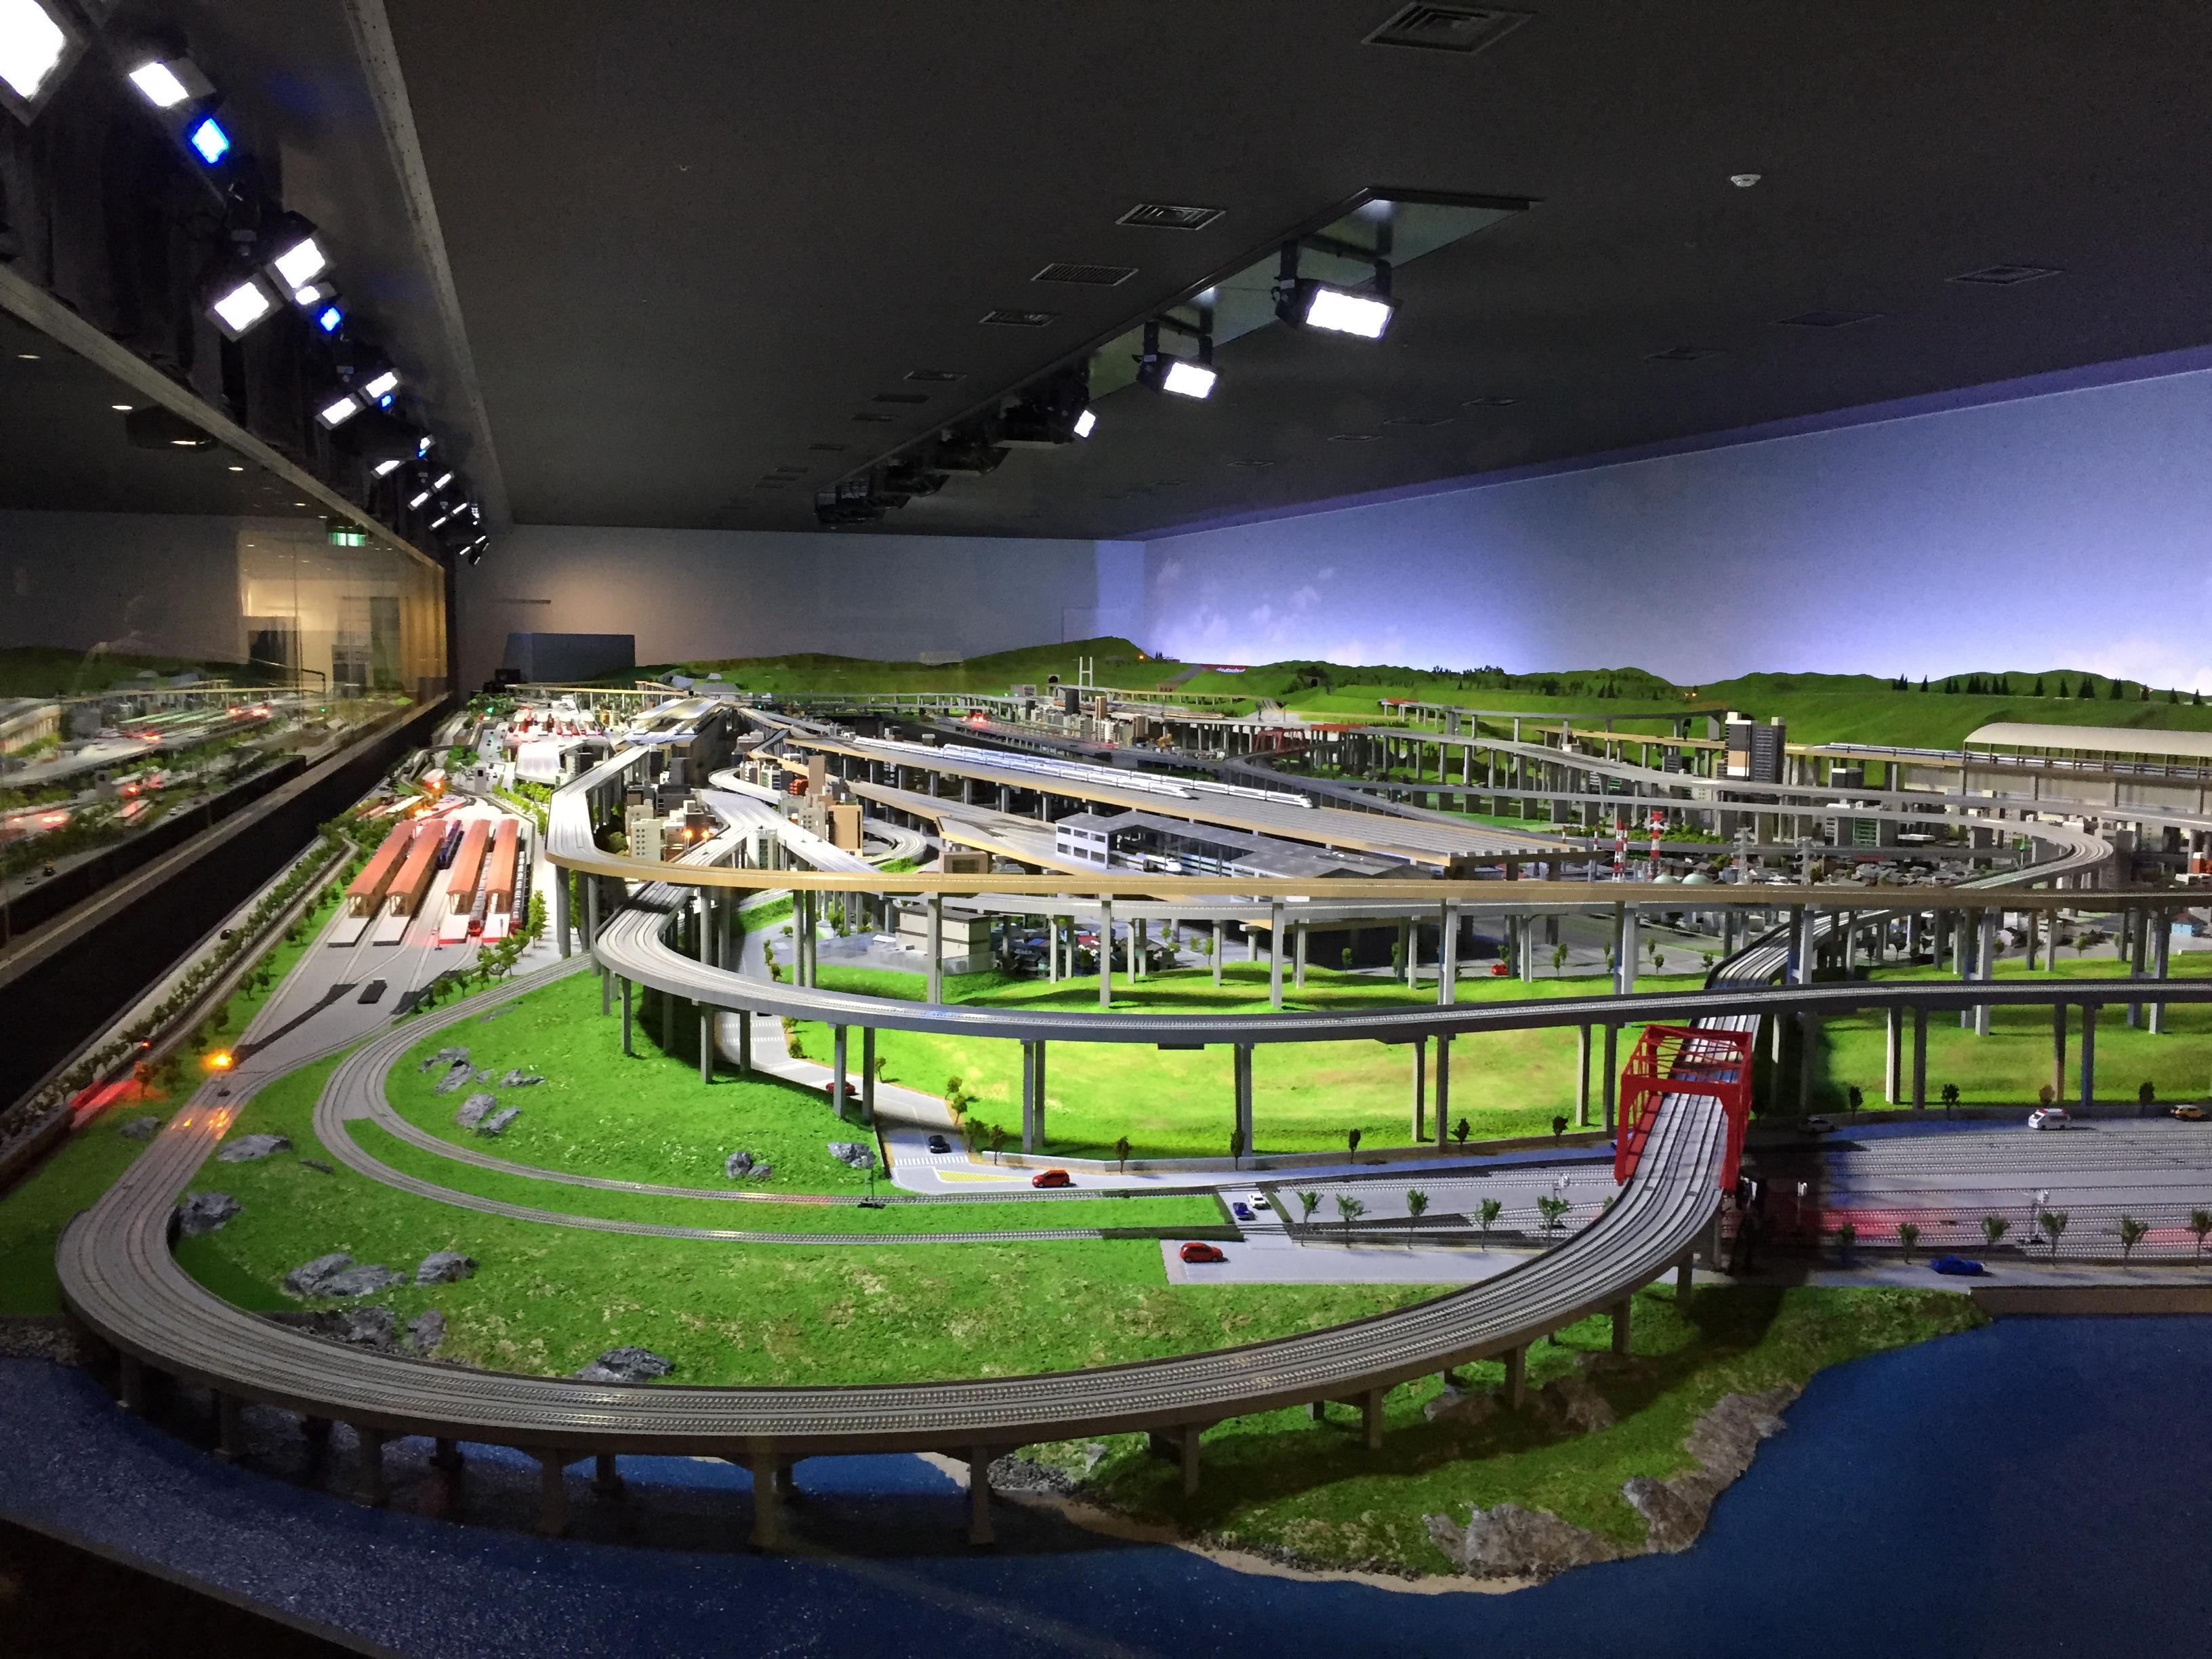 2023云南铁路博物馆游玩攻略,云南铁路博物馆位于原火车站...【去哪儿攻略】